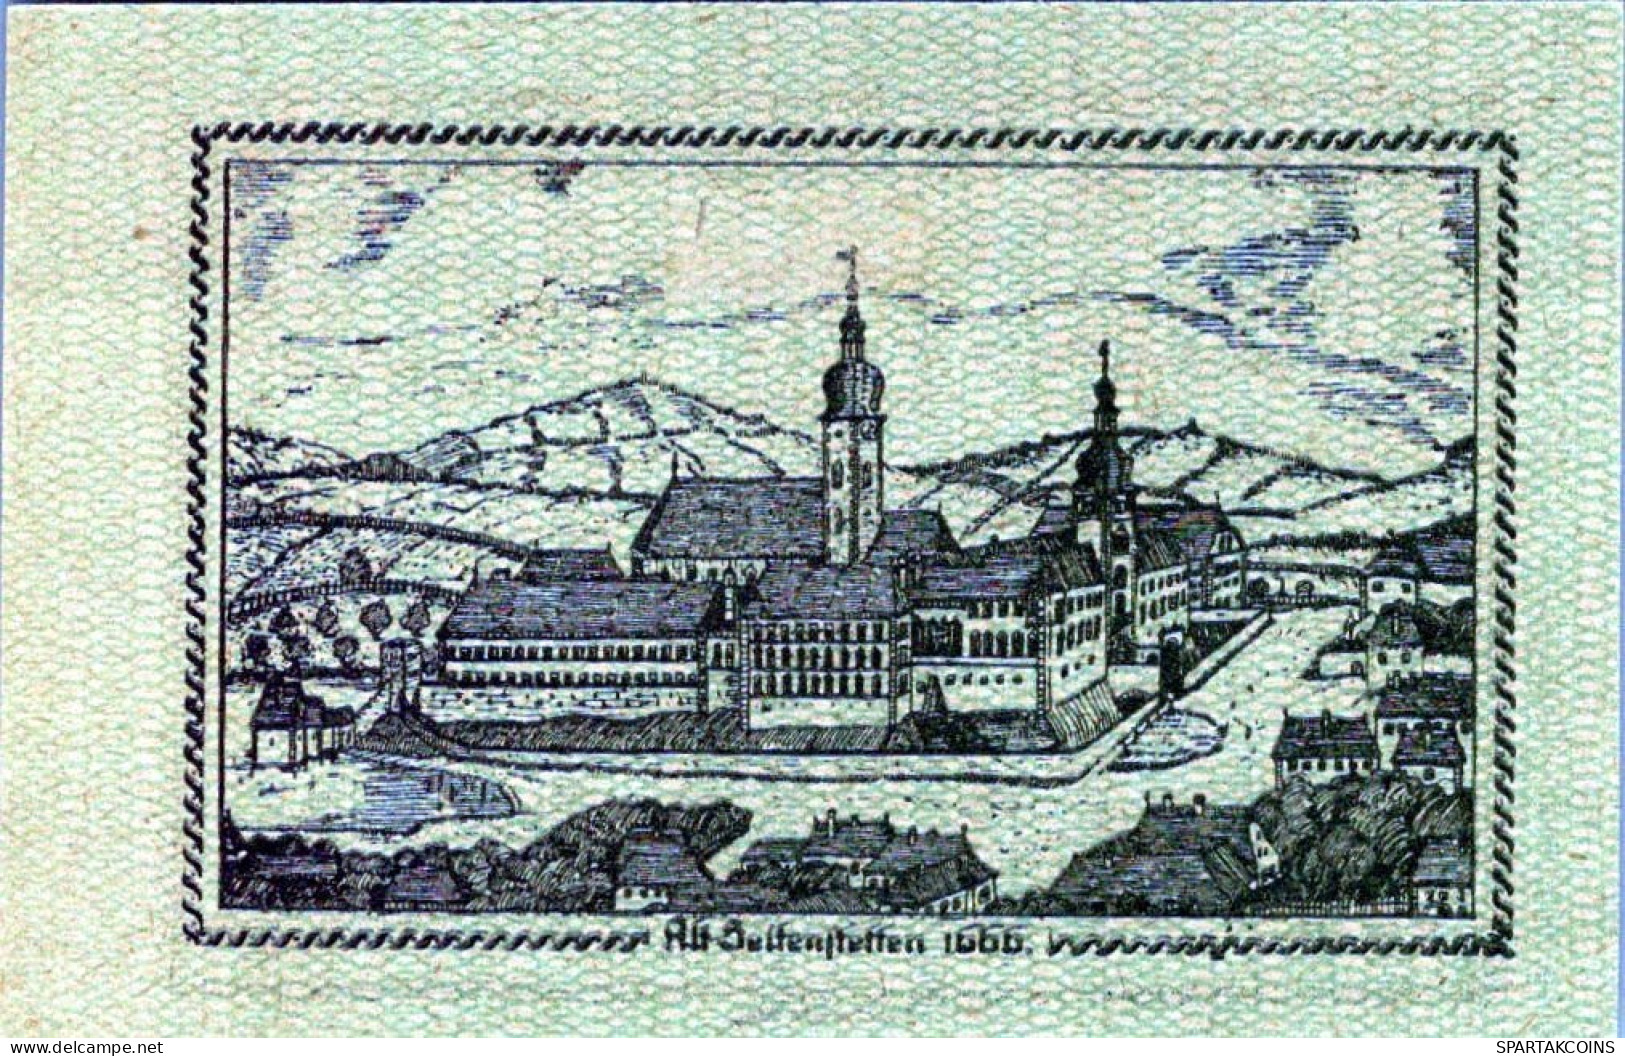 20 HELLER 1920 Stadt SEITENSTETTEN Niedrigeren Österreich Notgeld #PE634 - Lokale Ausgaben